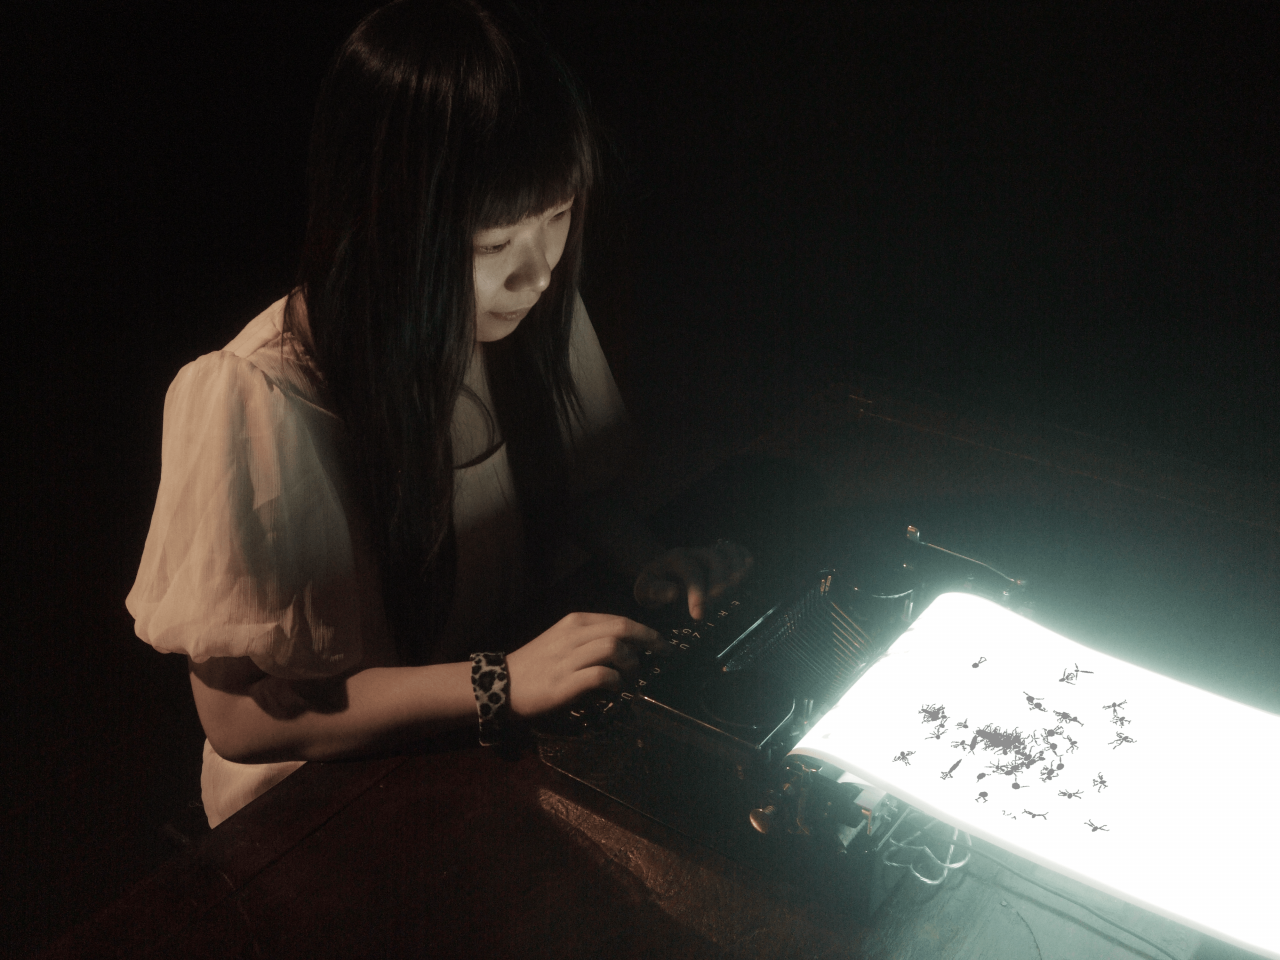 Eine Frau tippt auf einer leuchtenden Schreibmaschine